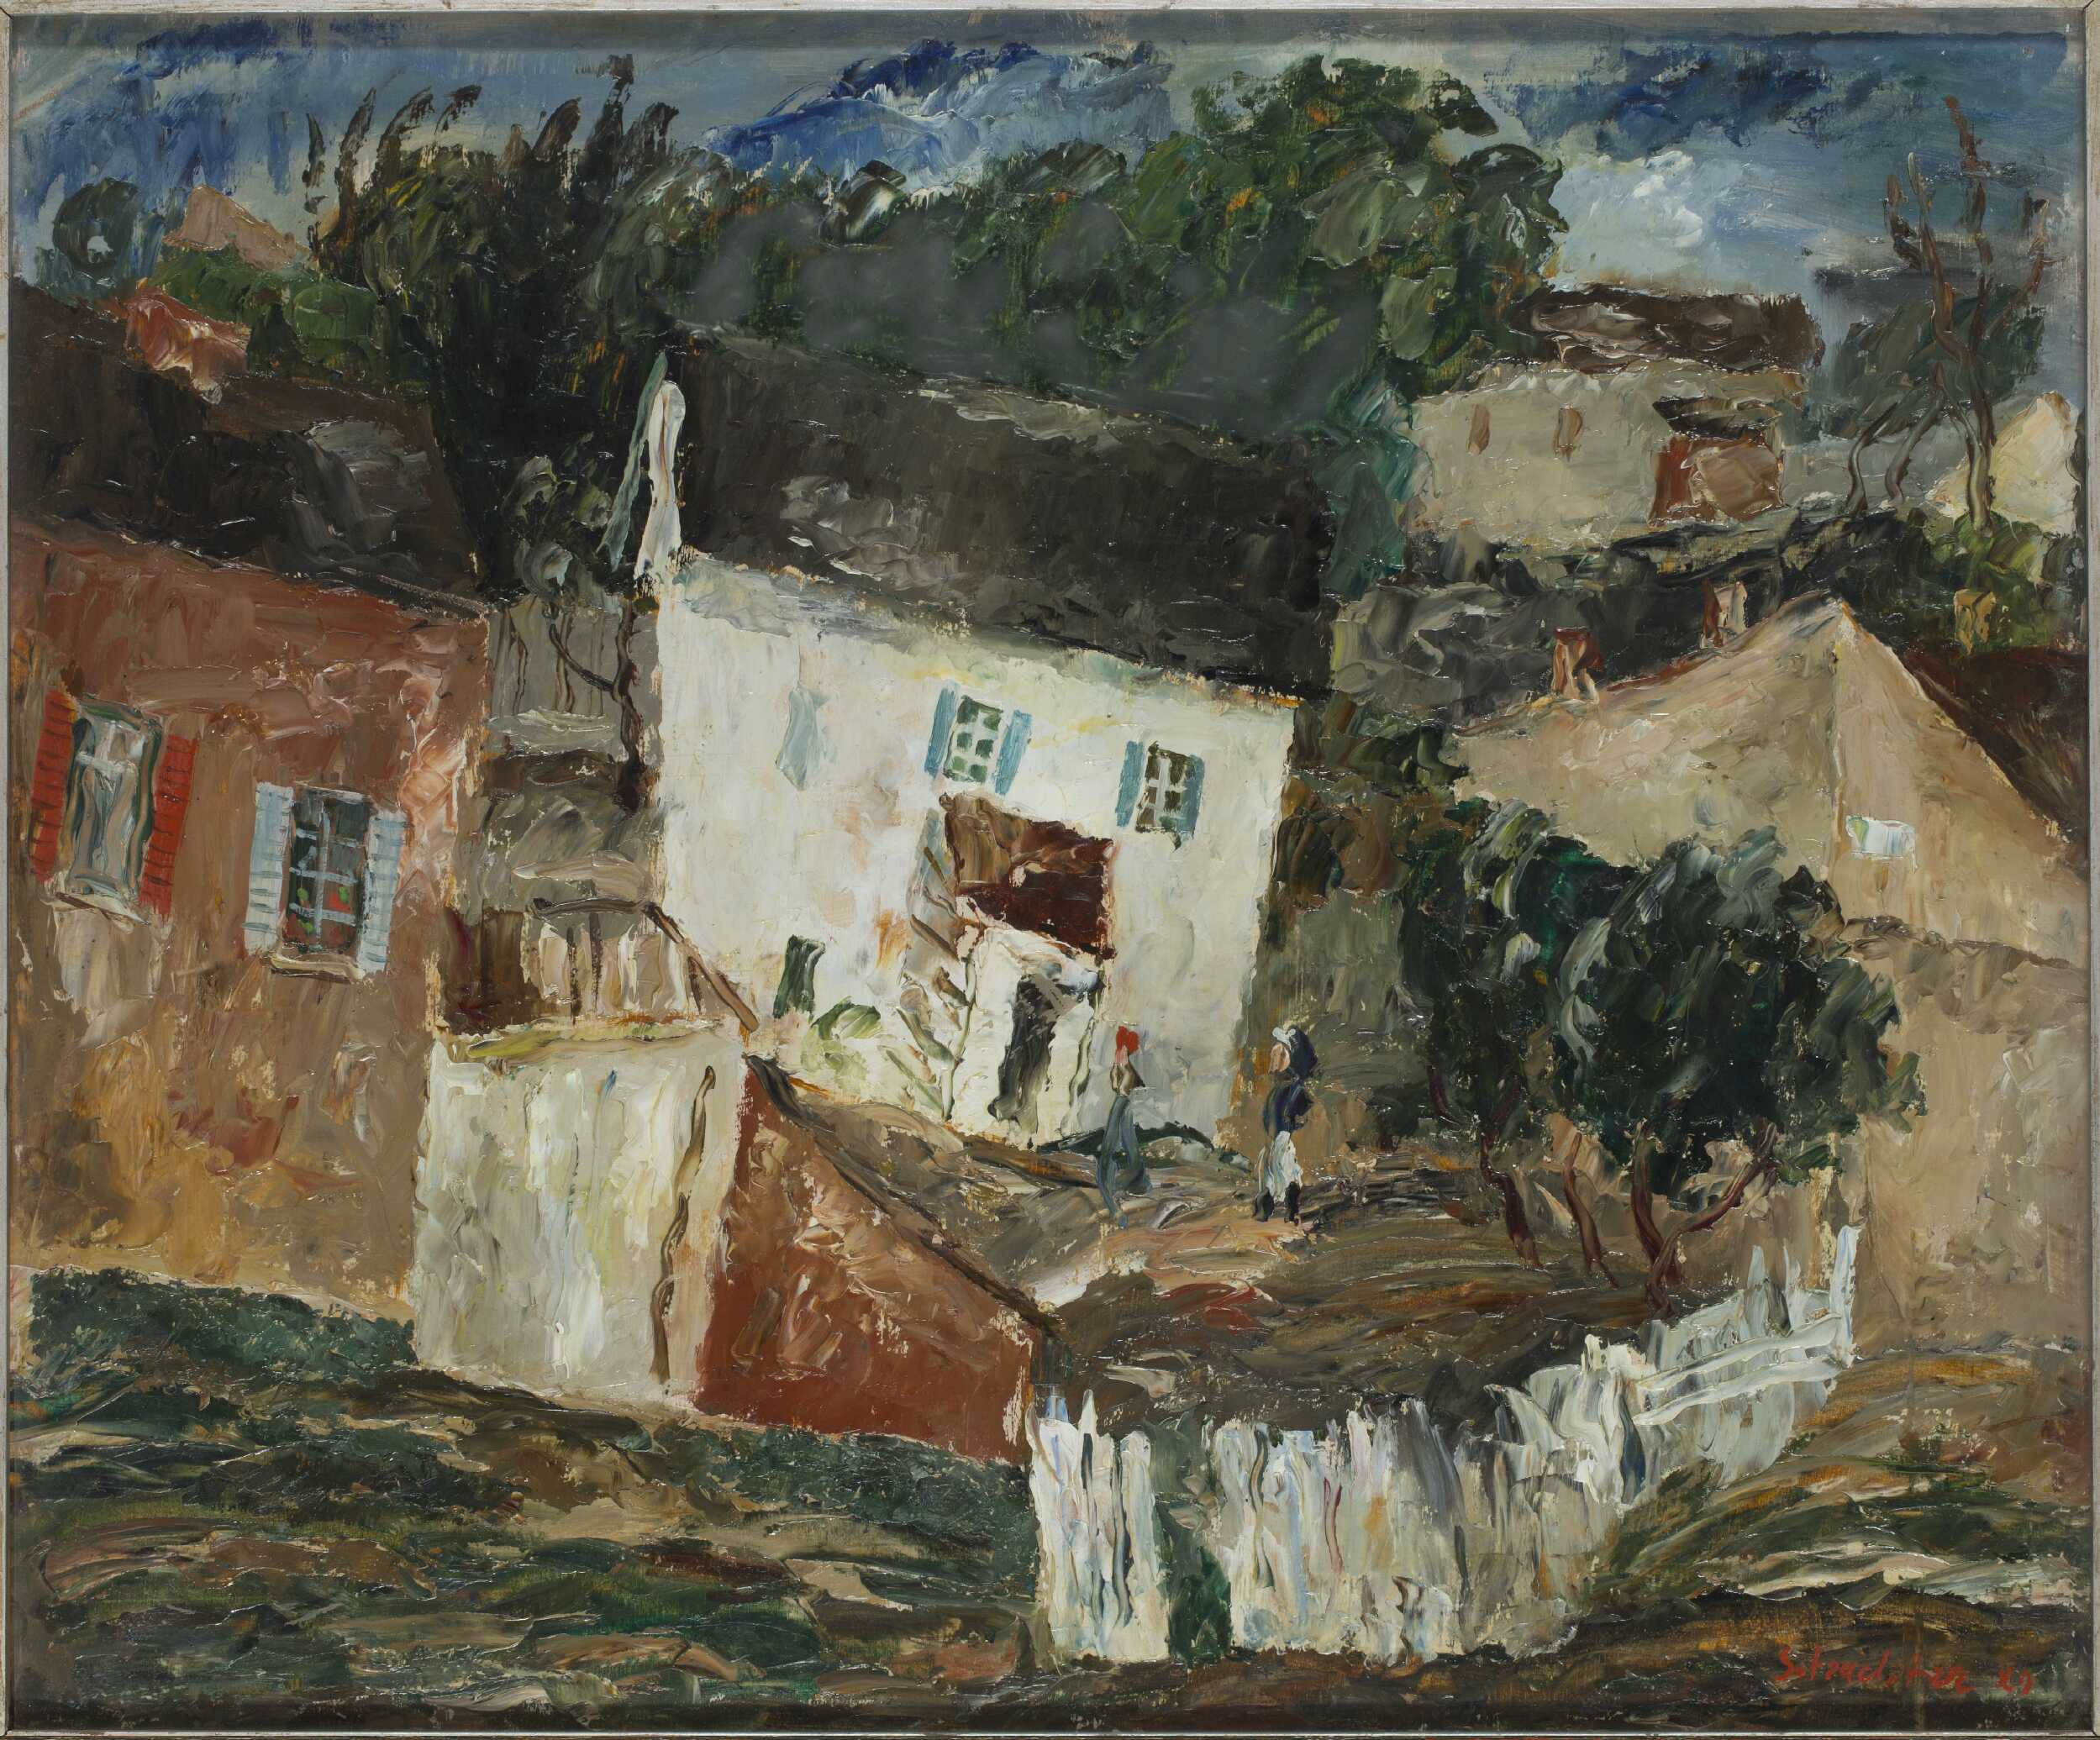 Krajina z Kazimierz Dolny (?) by Symche Trachter - 1929 - 50 x 60 cm 